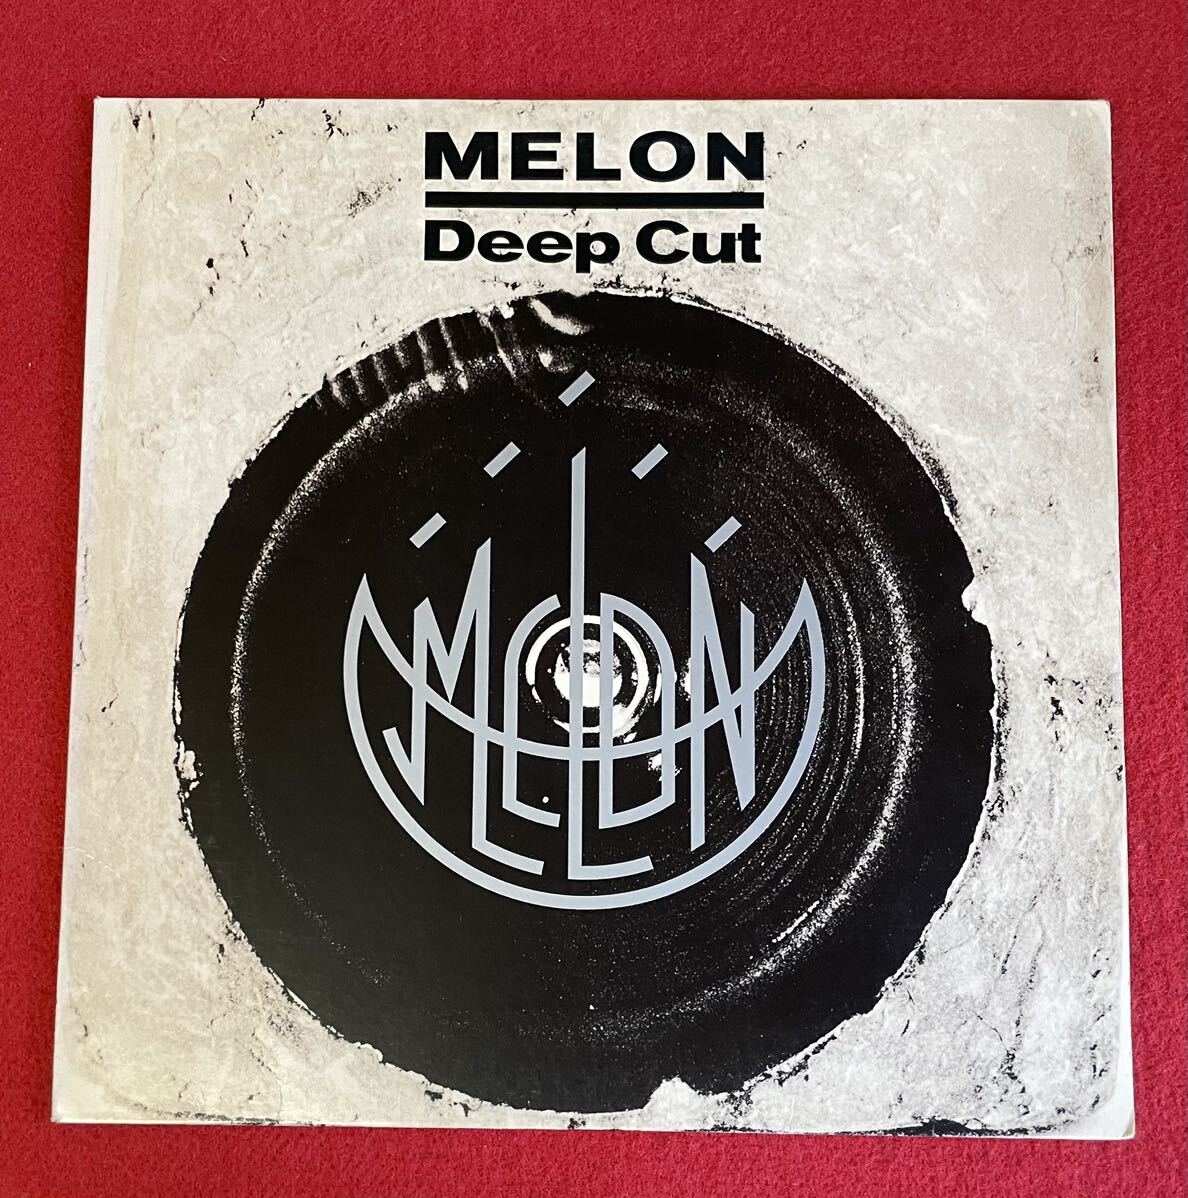 MELON中西俊夫 Deep Cut 12inch盤その他にもプロモーション盤 レア盤 人気レコード 多数出品。の画像1